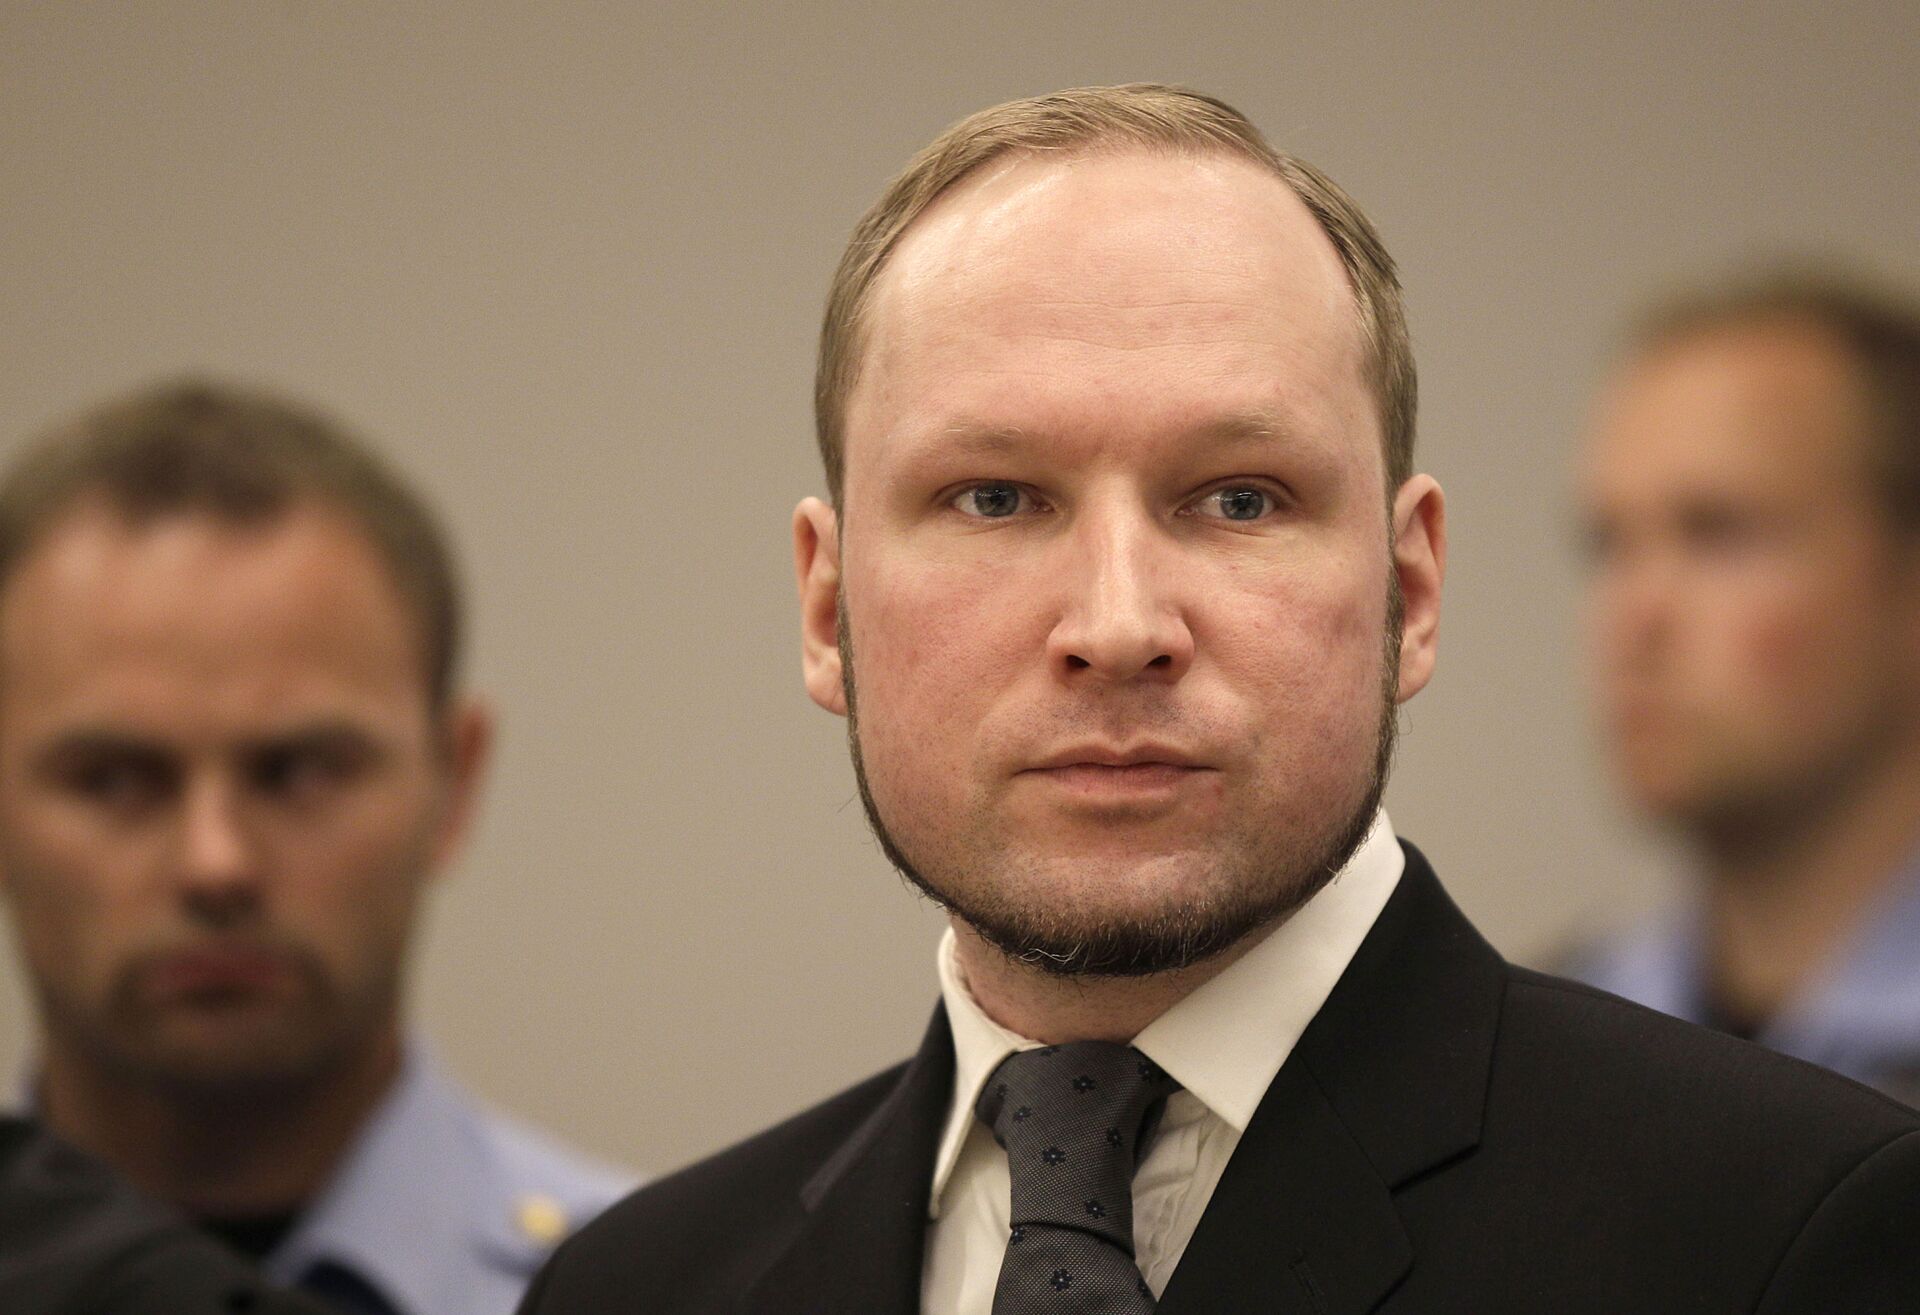 Caso Breivik: 10 anos após ataque extremista, Noruega ainda debate como lidar com tais ideologias - Sputnik Brasil, 1920, 22.07.2021